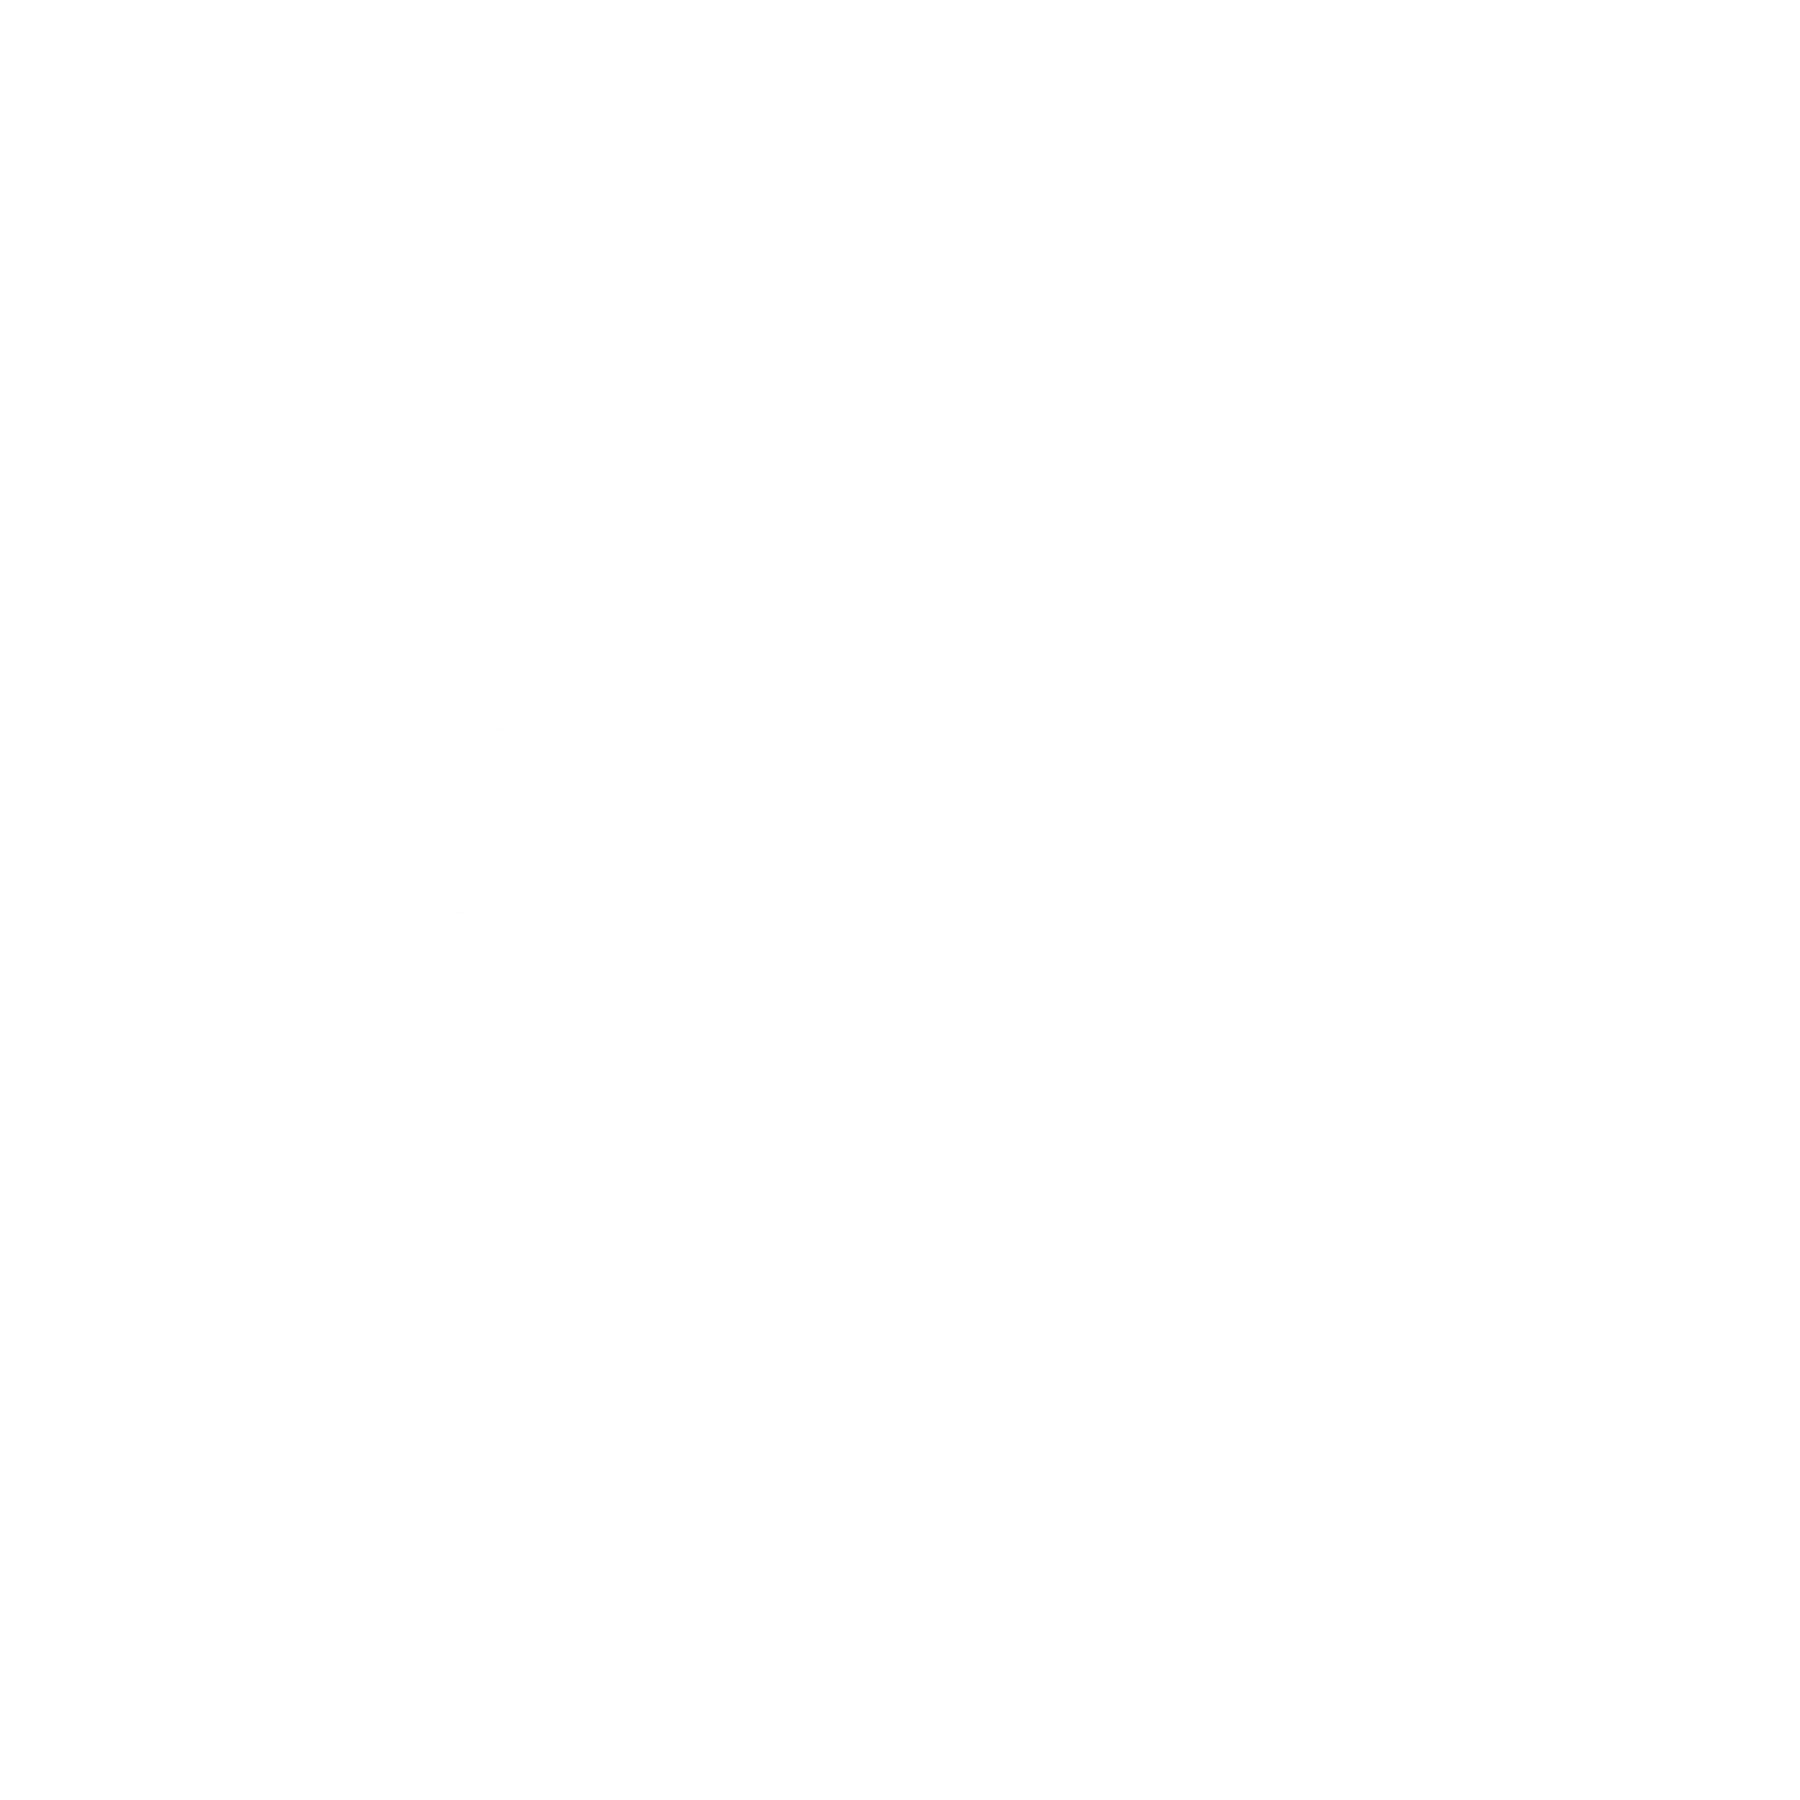 南亚网络电视_- SATV - 南亚第一华文综合资讯网站